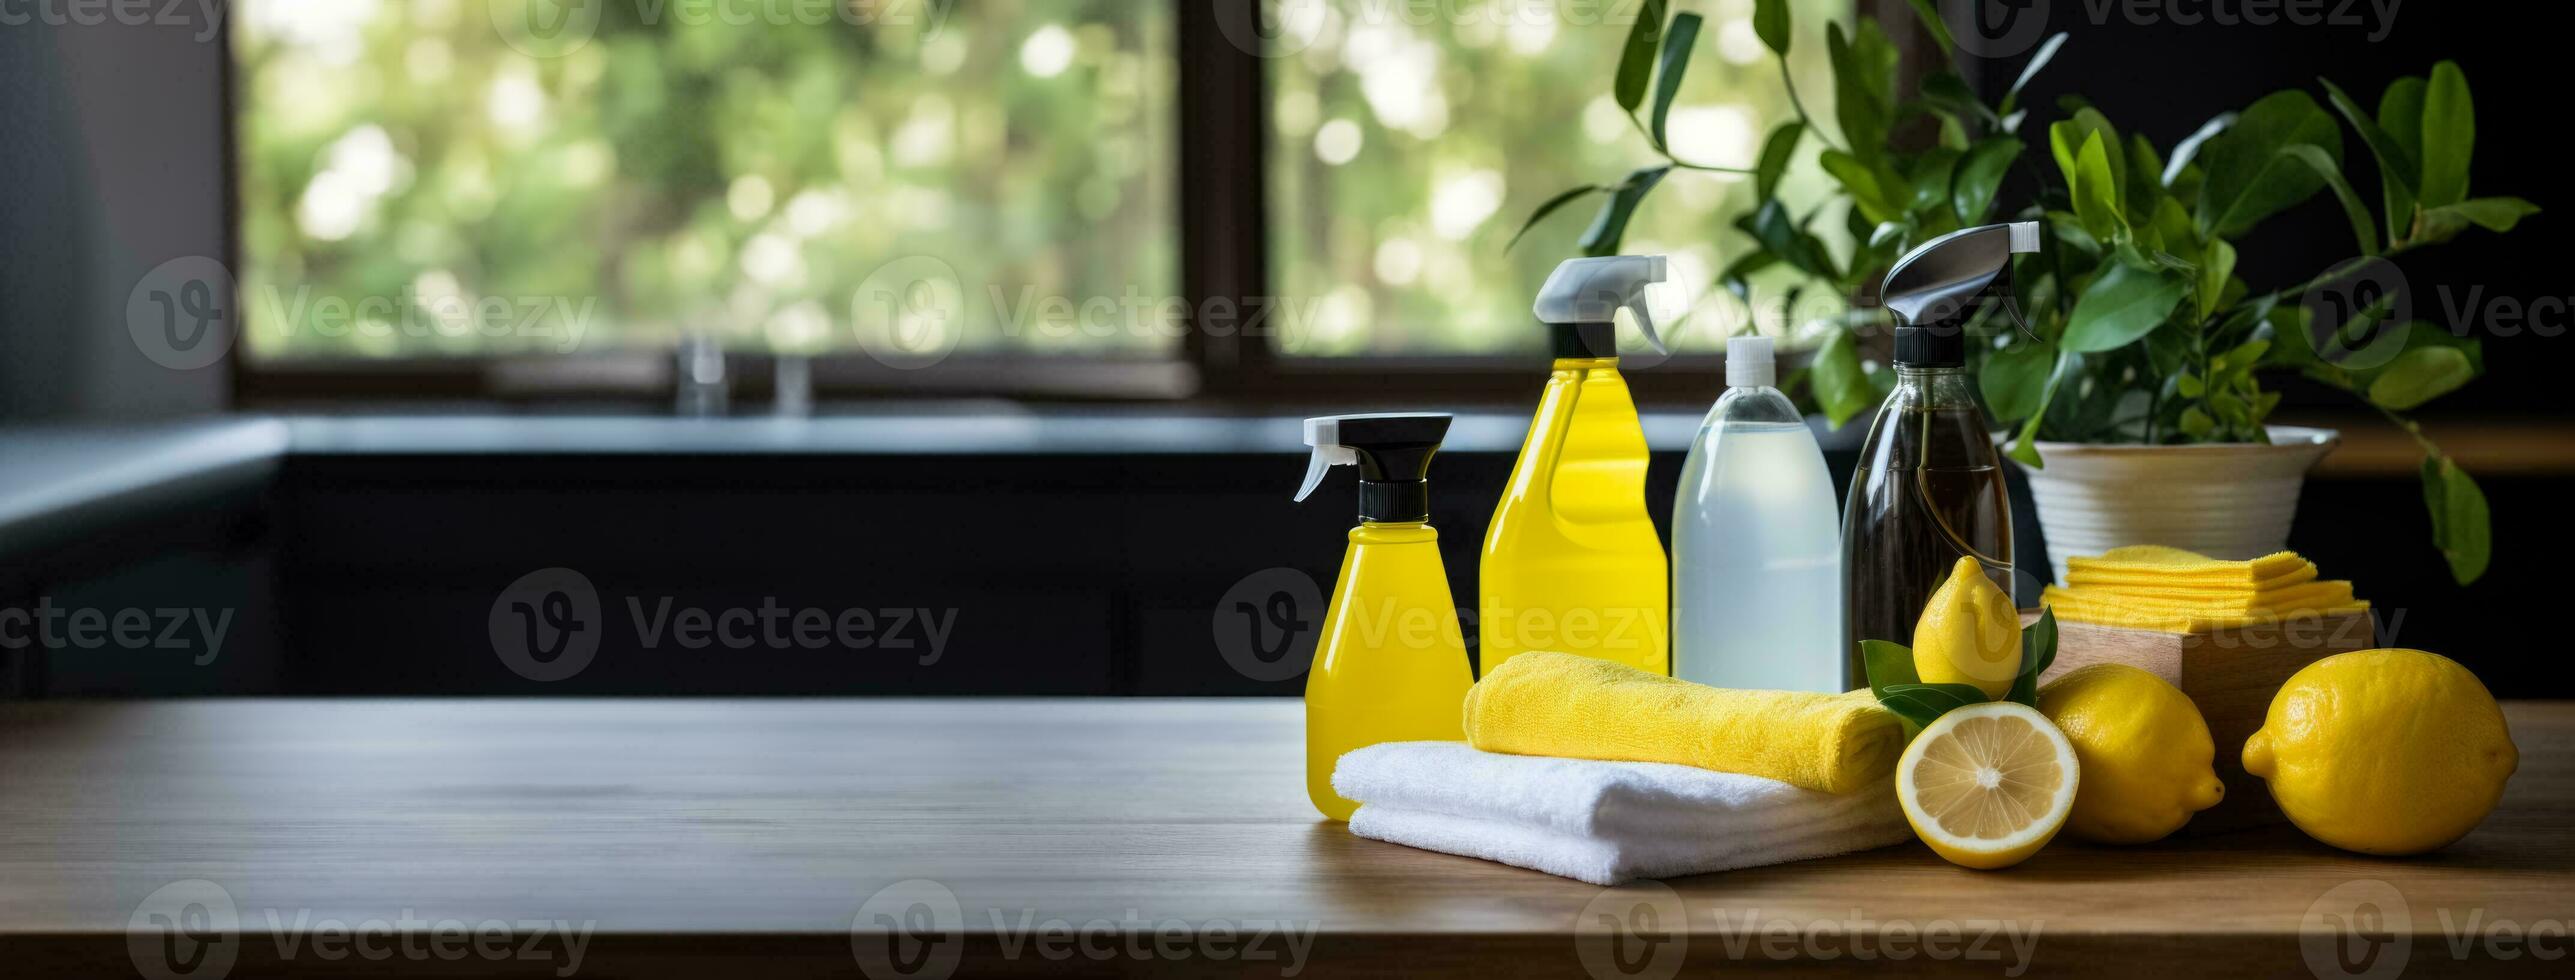 hygiëne routines voor onderhouden een schoon huis foto